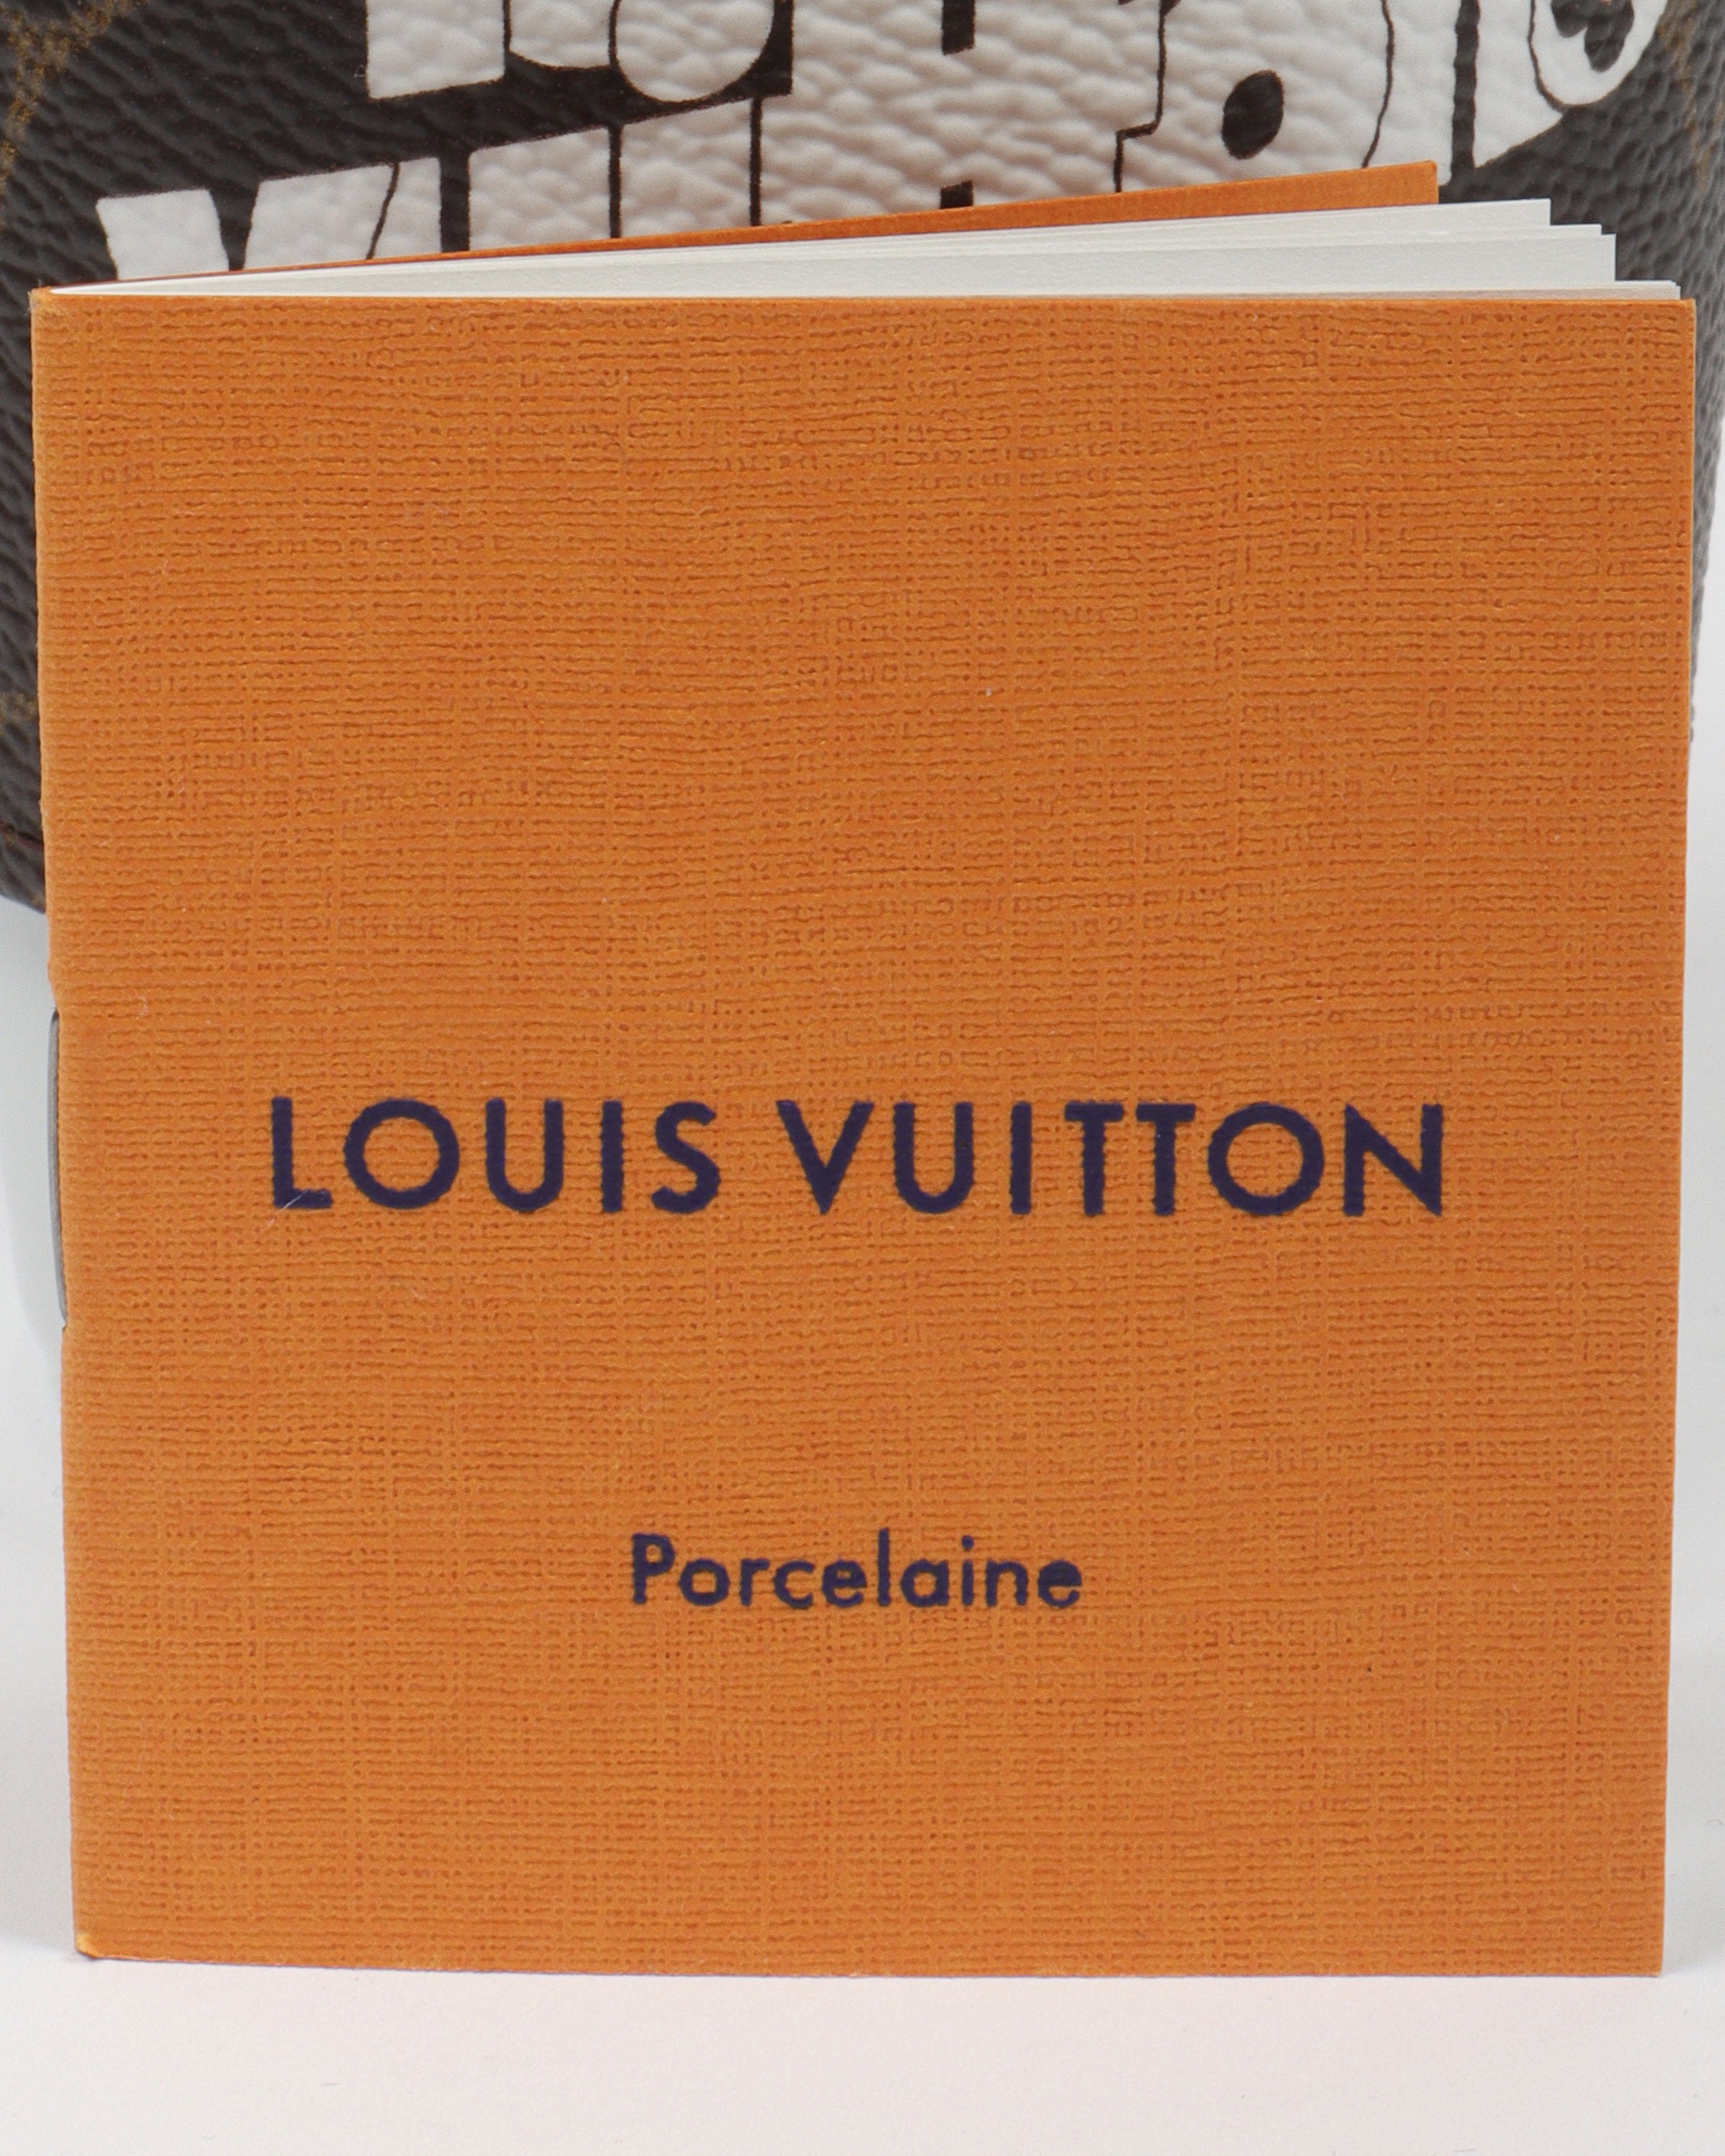 Louis Vuitton Portable Coffee Cup